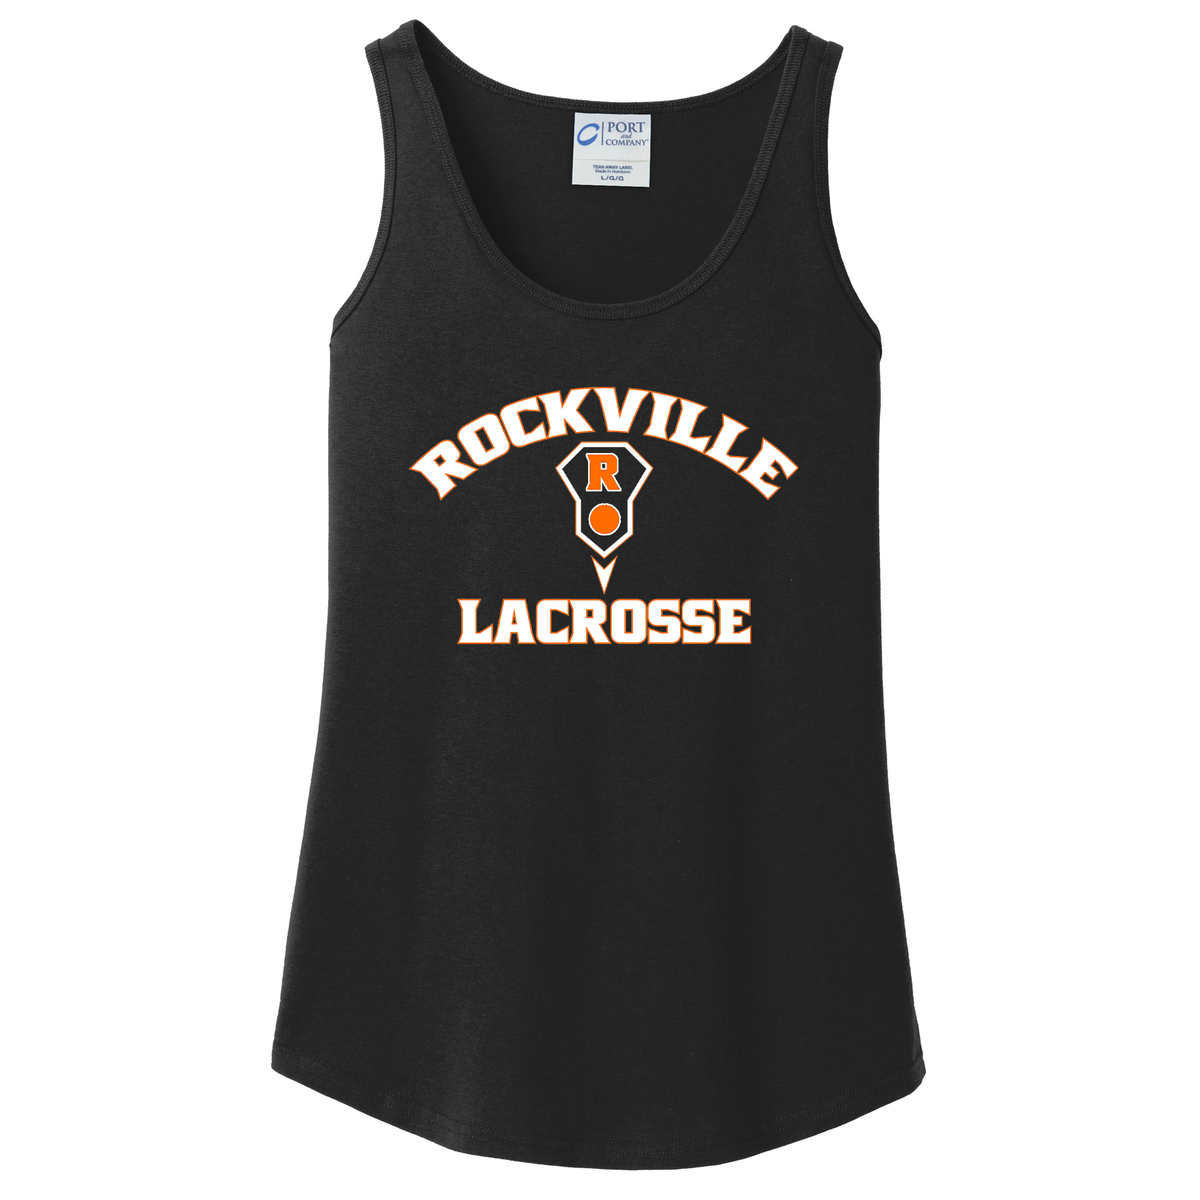 Rockville HS Girls Lacrosse Women's Tank Top